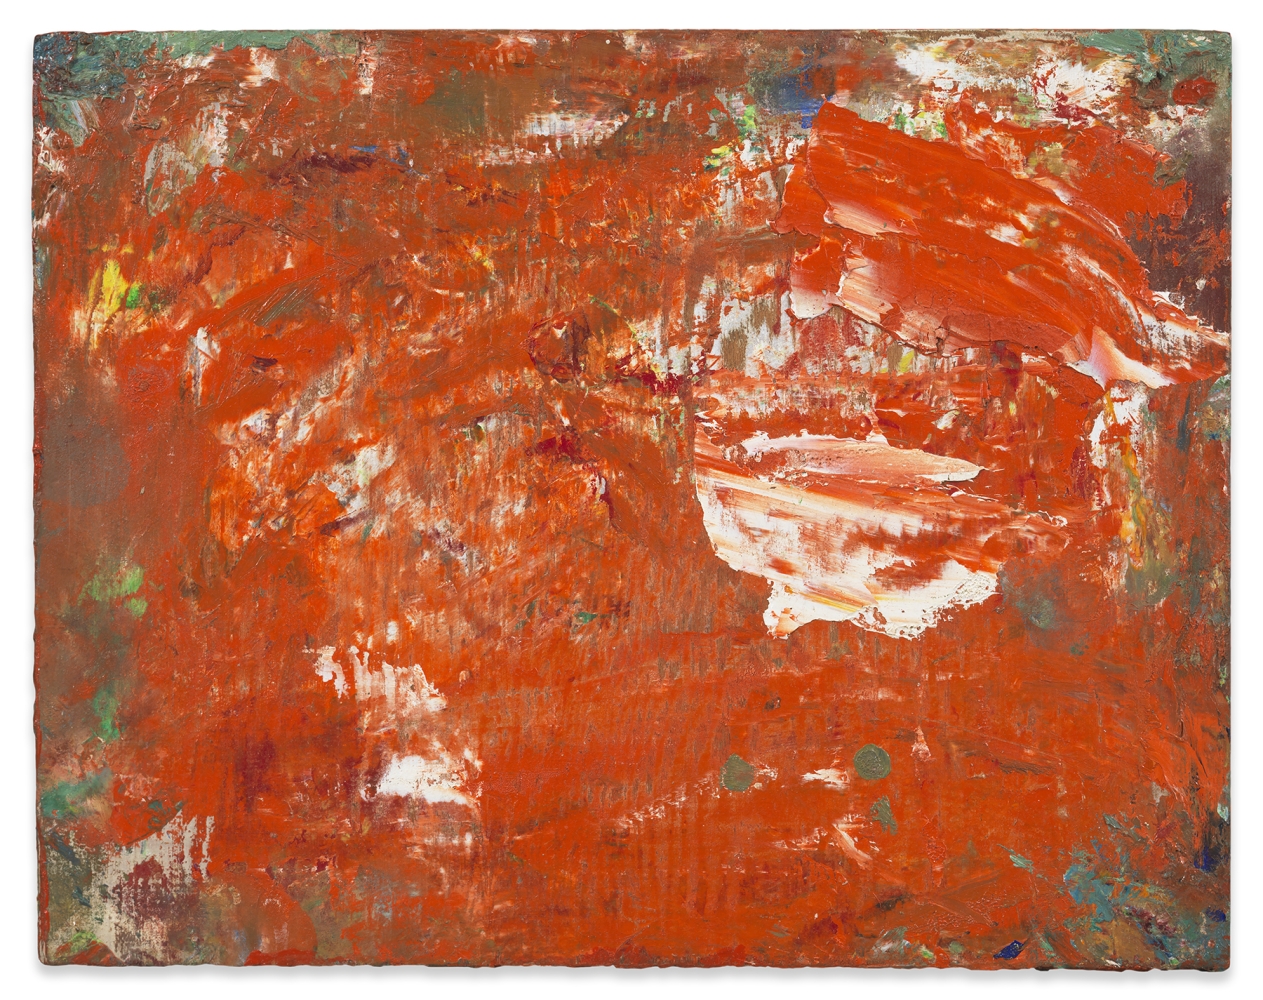 Hans Hofmann

Shimmering Red, 1952

Oil on board

7 1/2h x 9 3/4w in

HH044